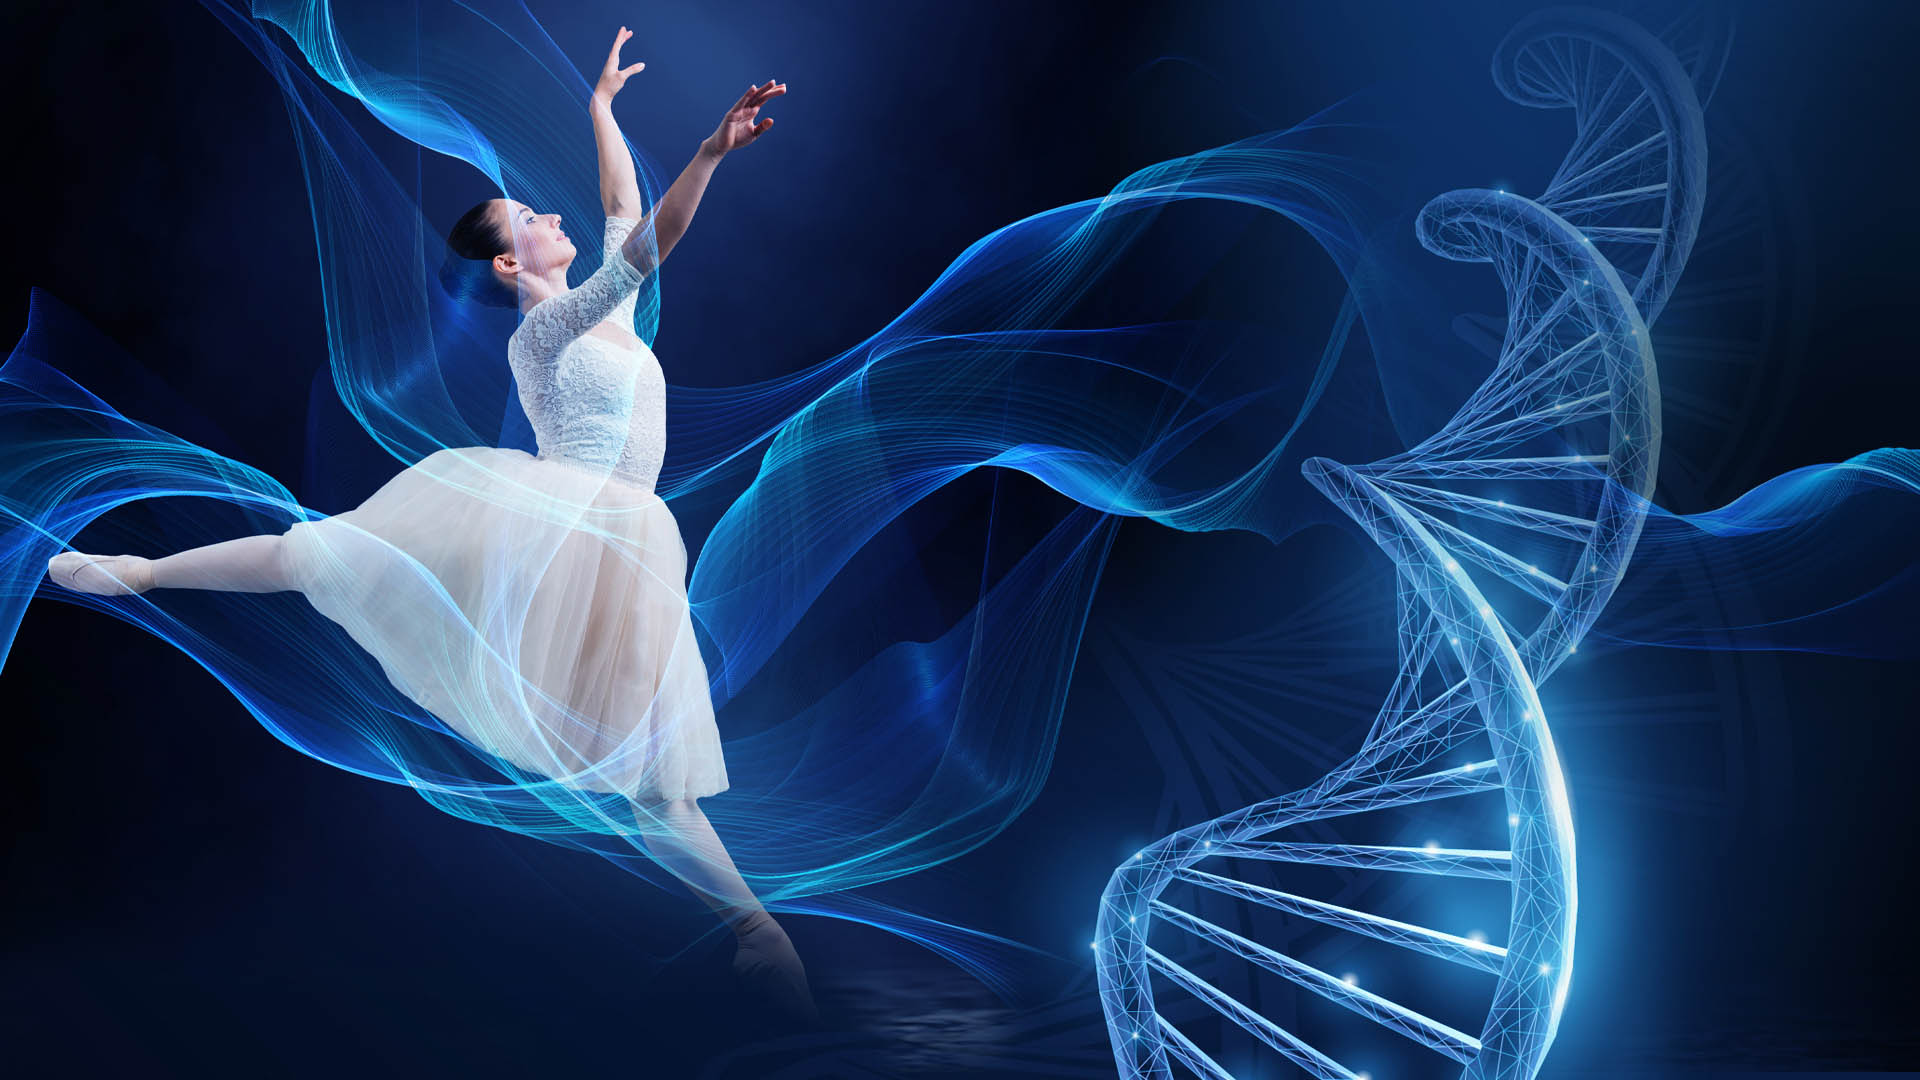 Oogcongres-visual met danseres en DNA-streng